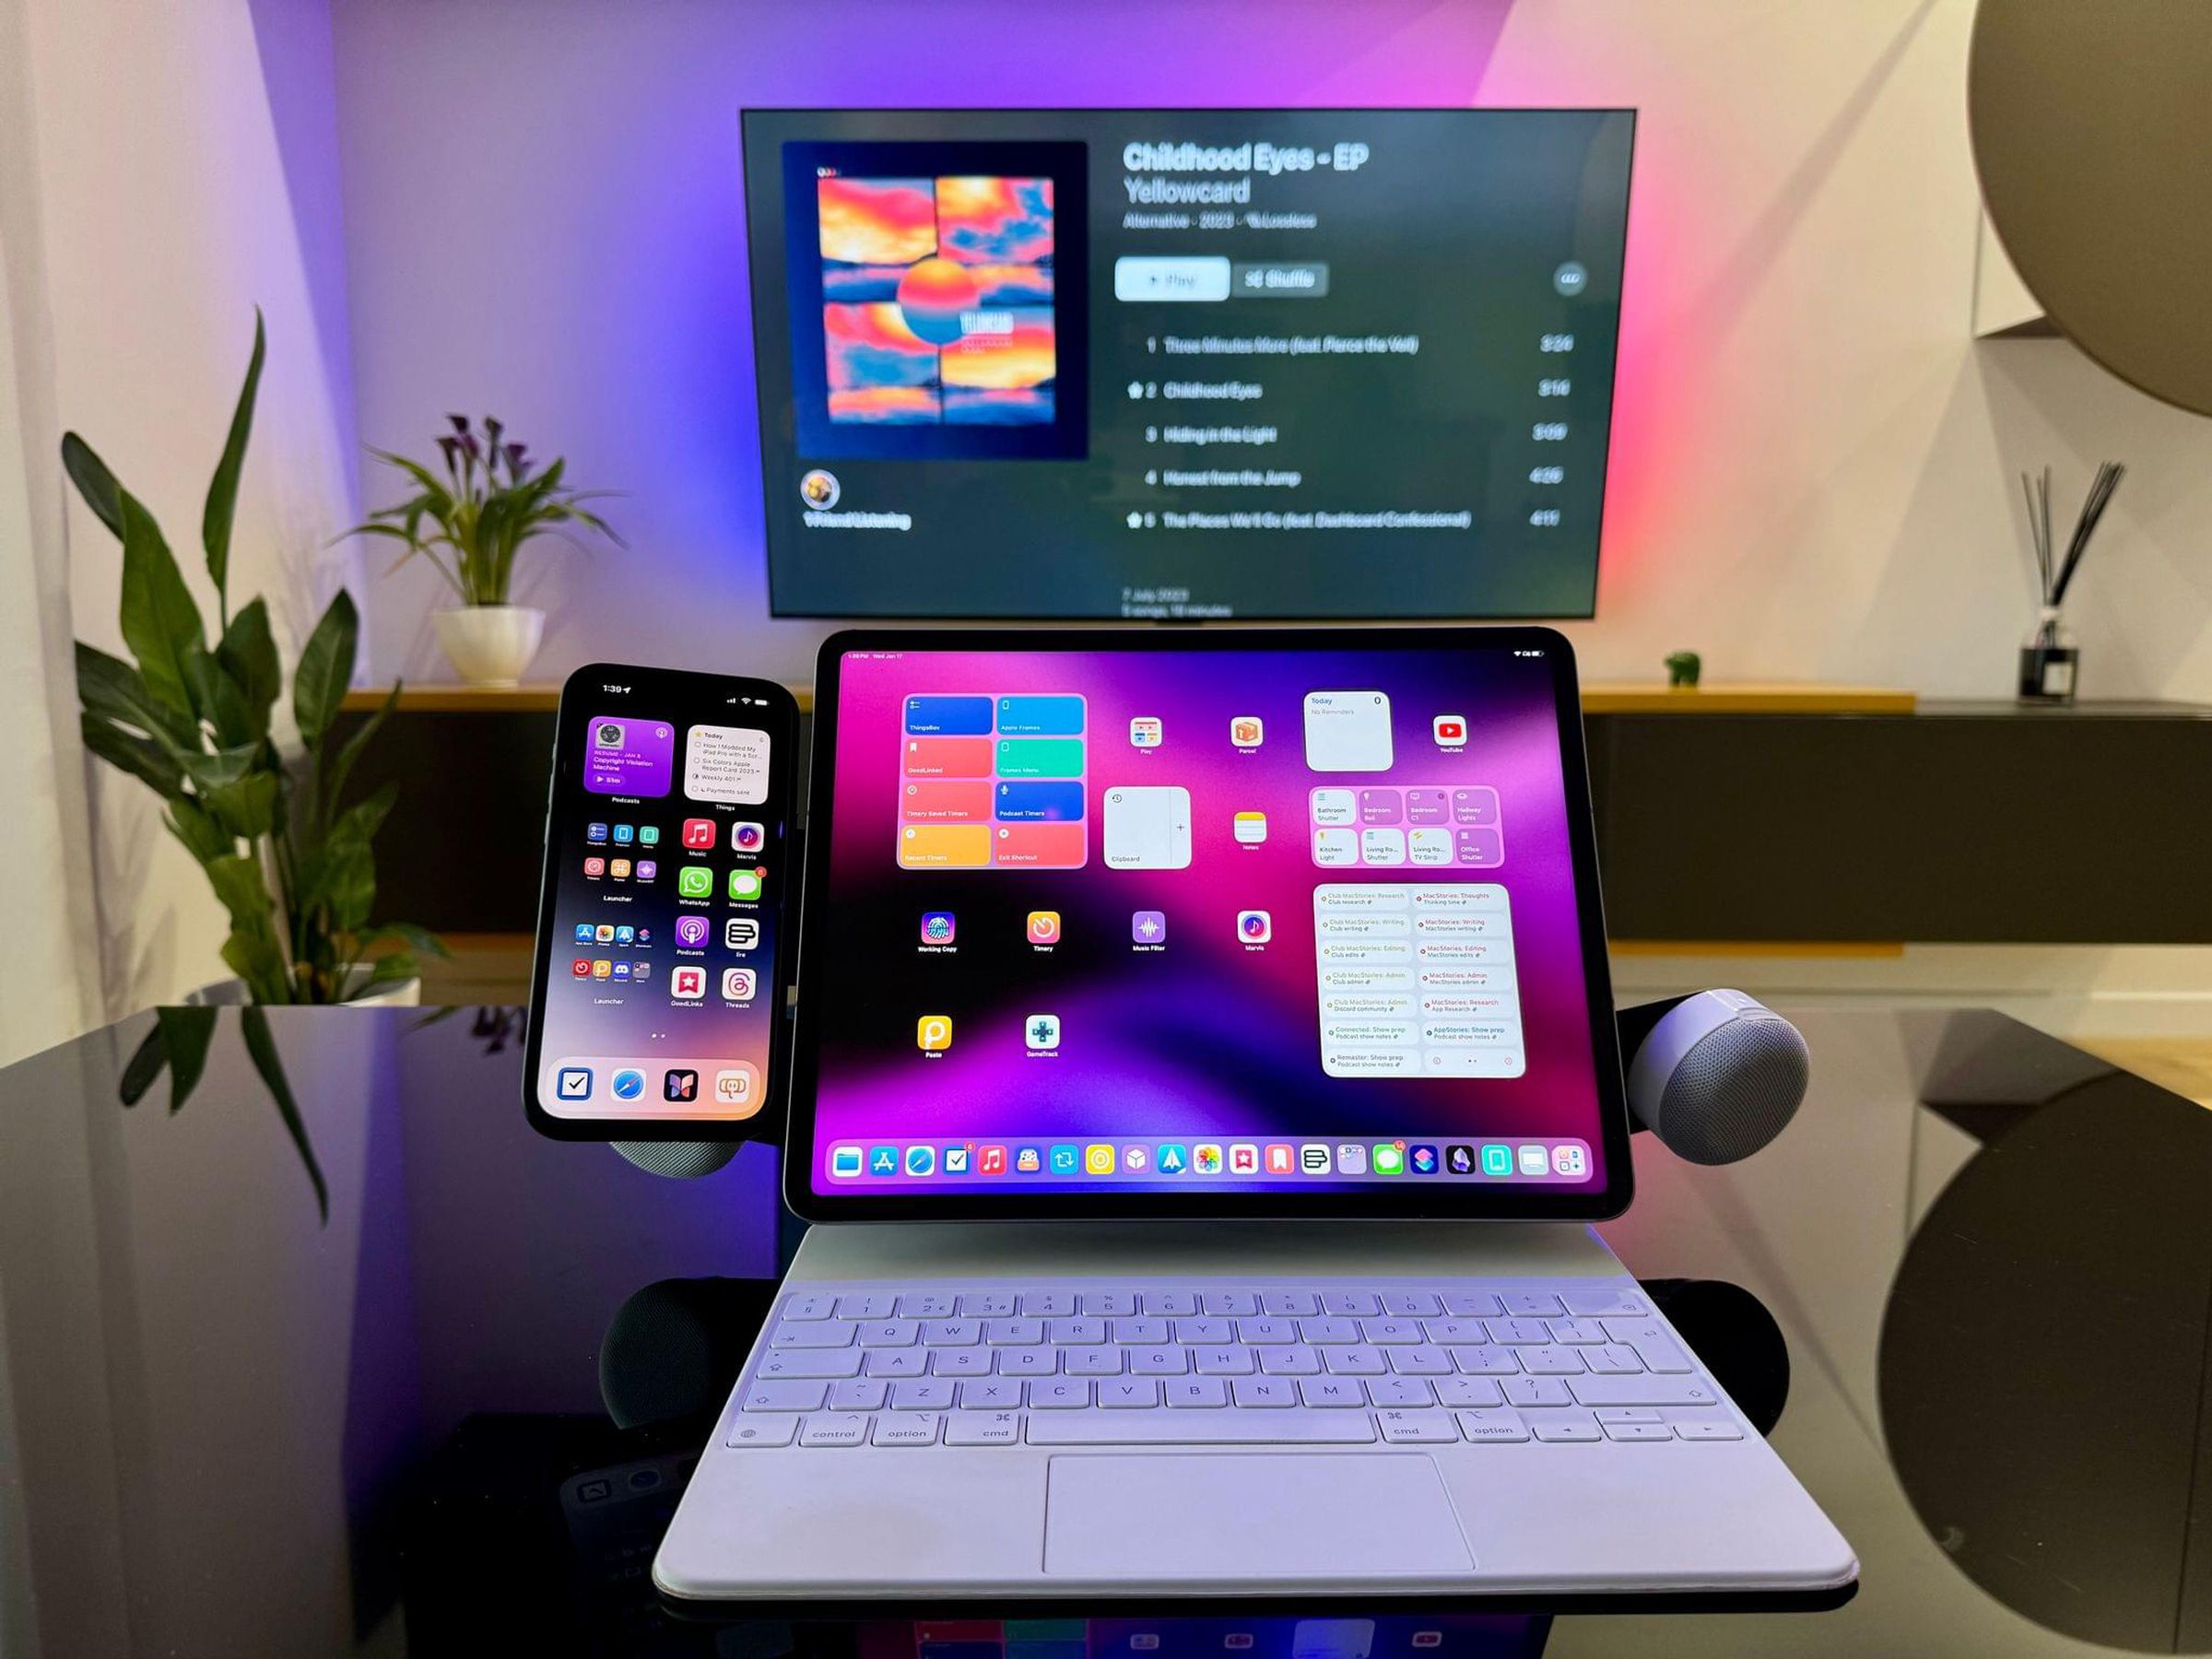 A photo of Federico Viticci’s iPad setup.